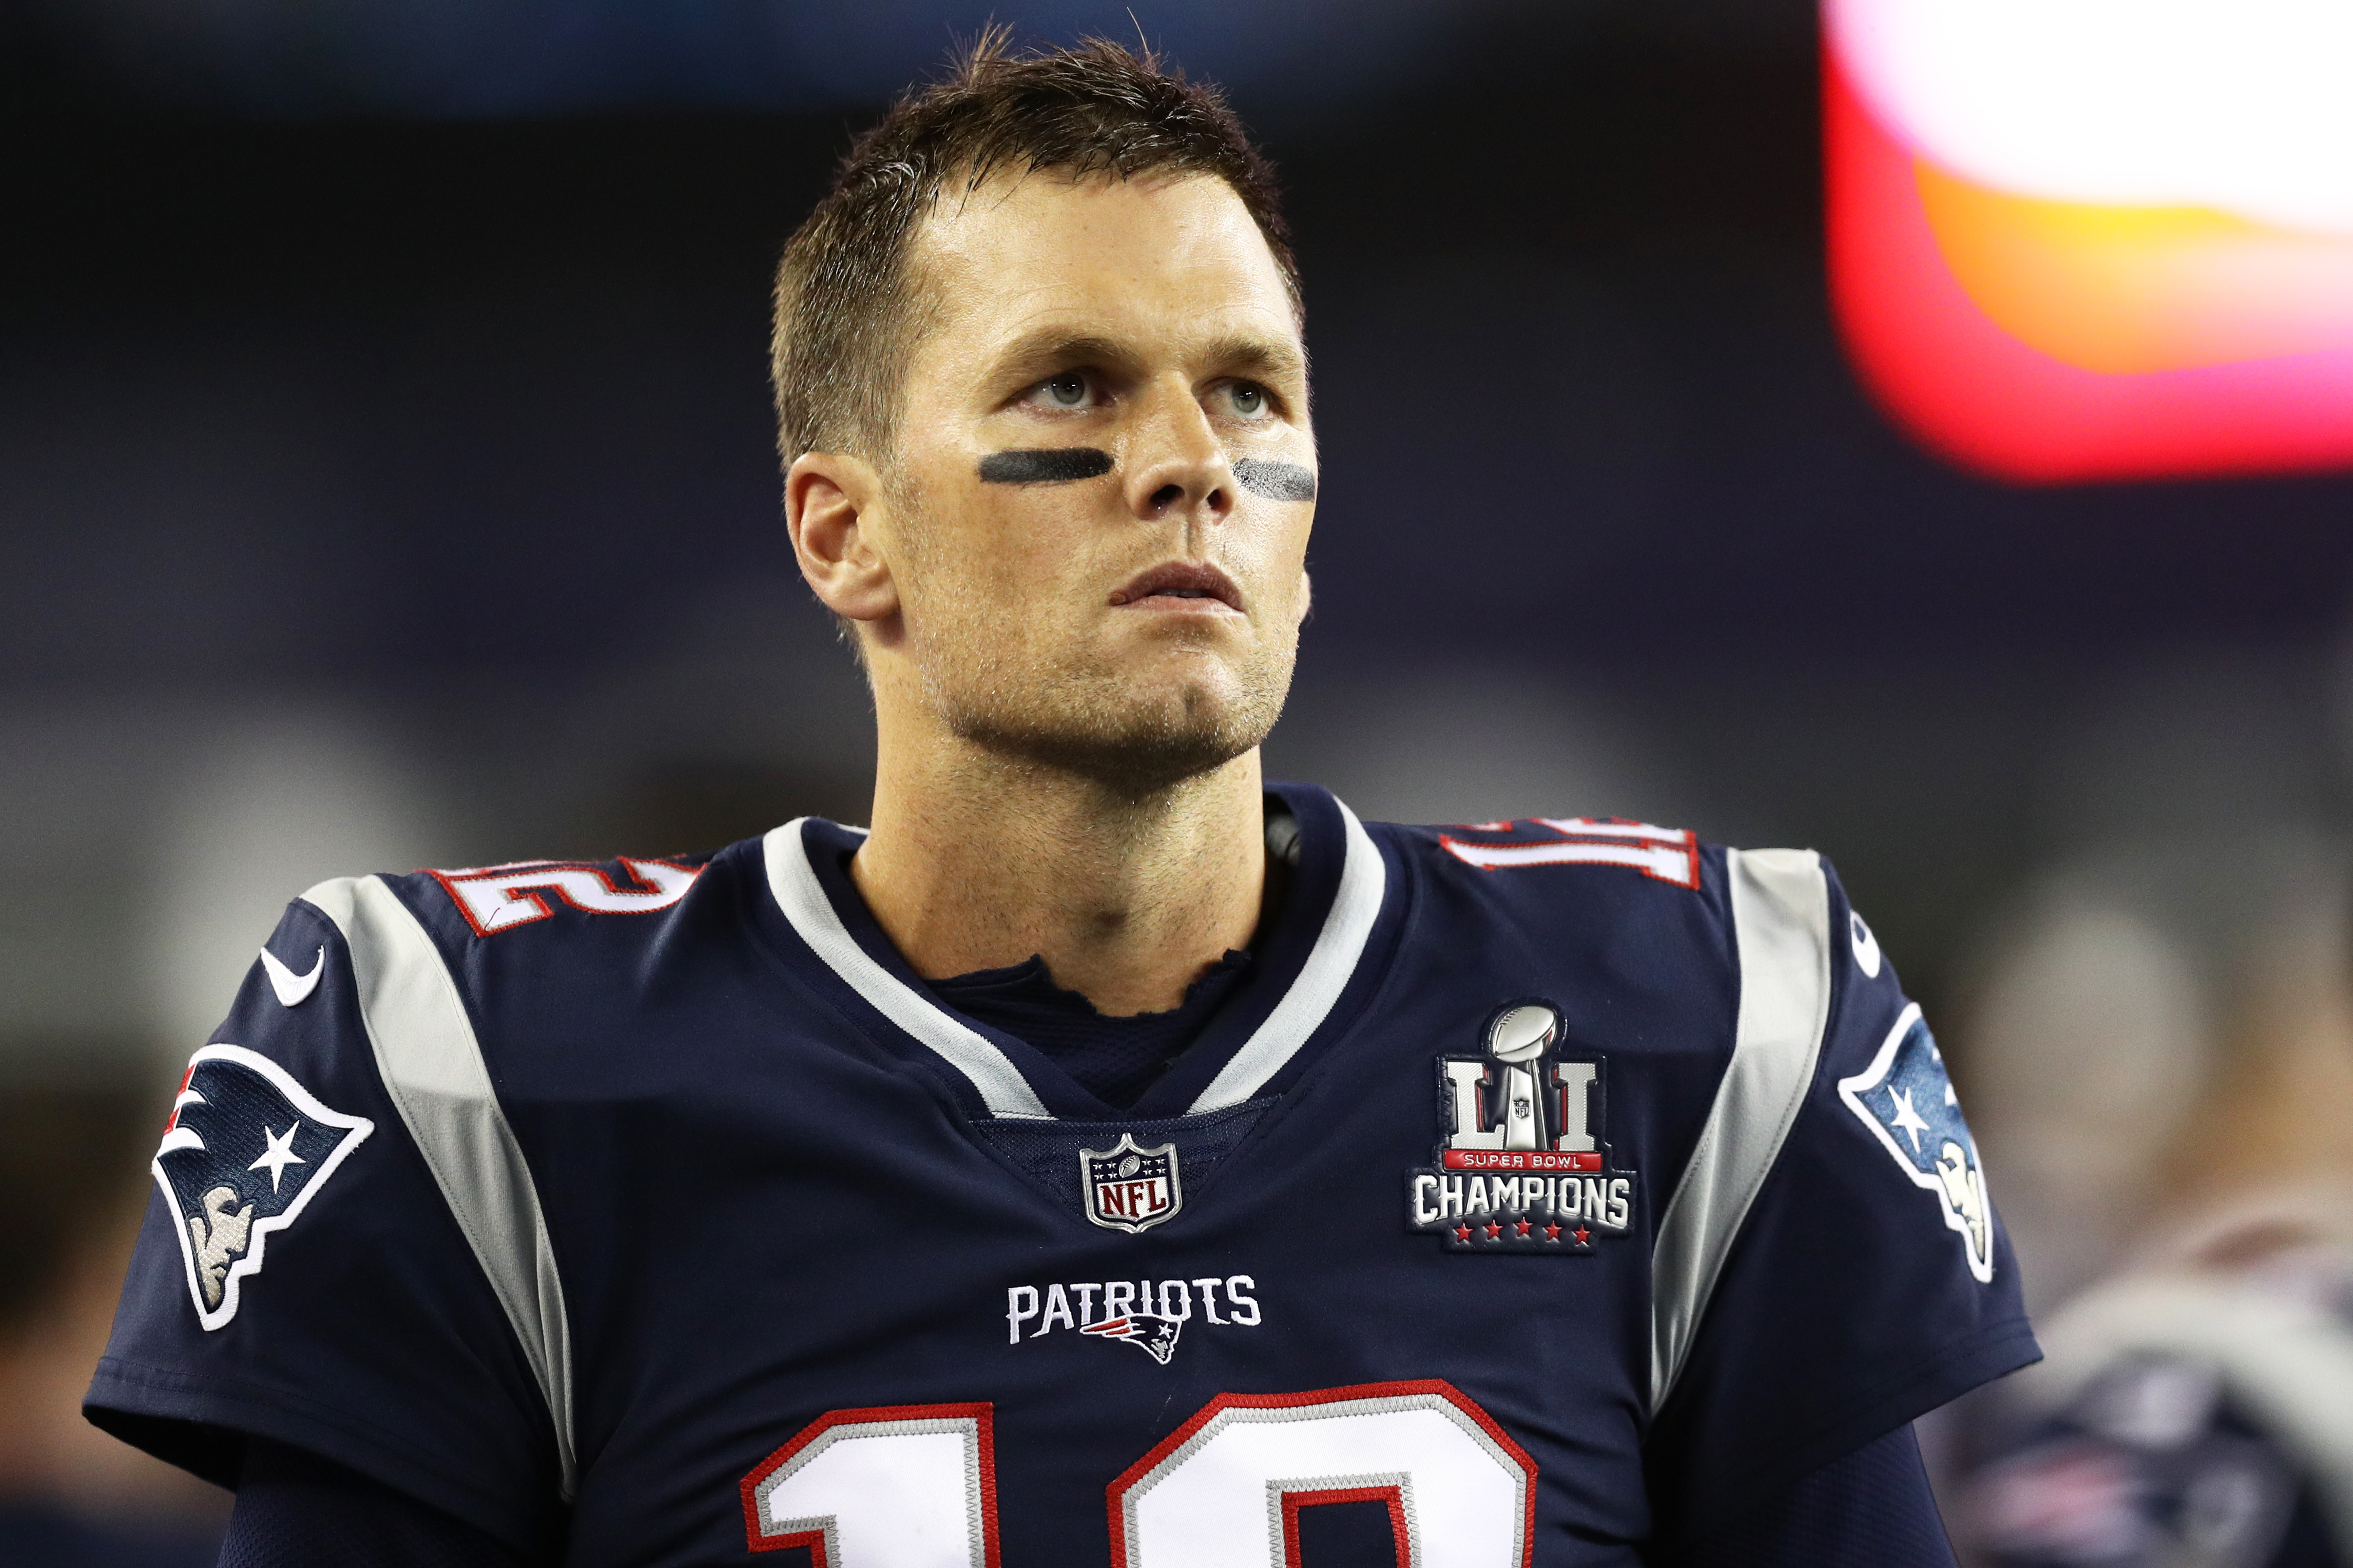 Vége egy legendás időszaknak: távozik Tom Brady a New Englandból